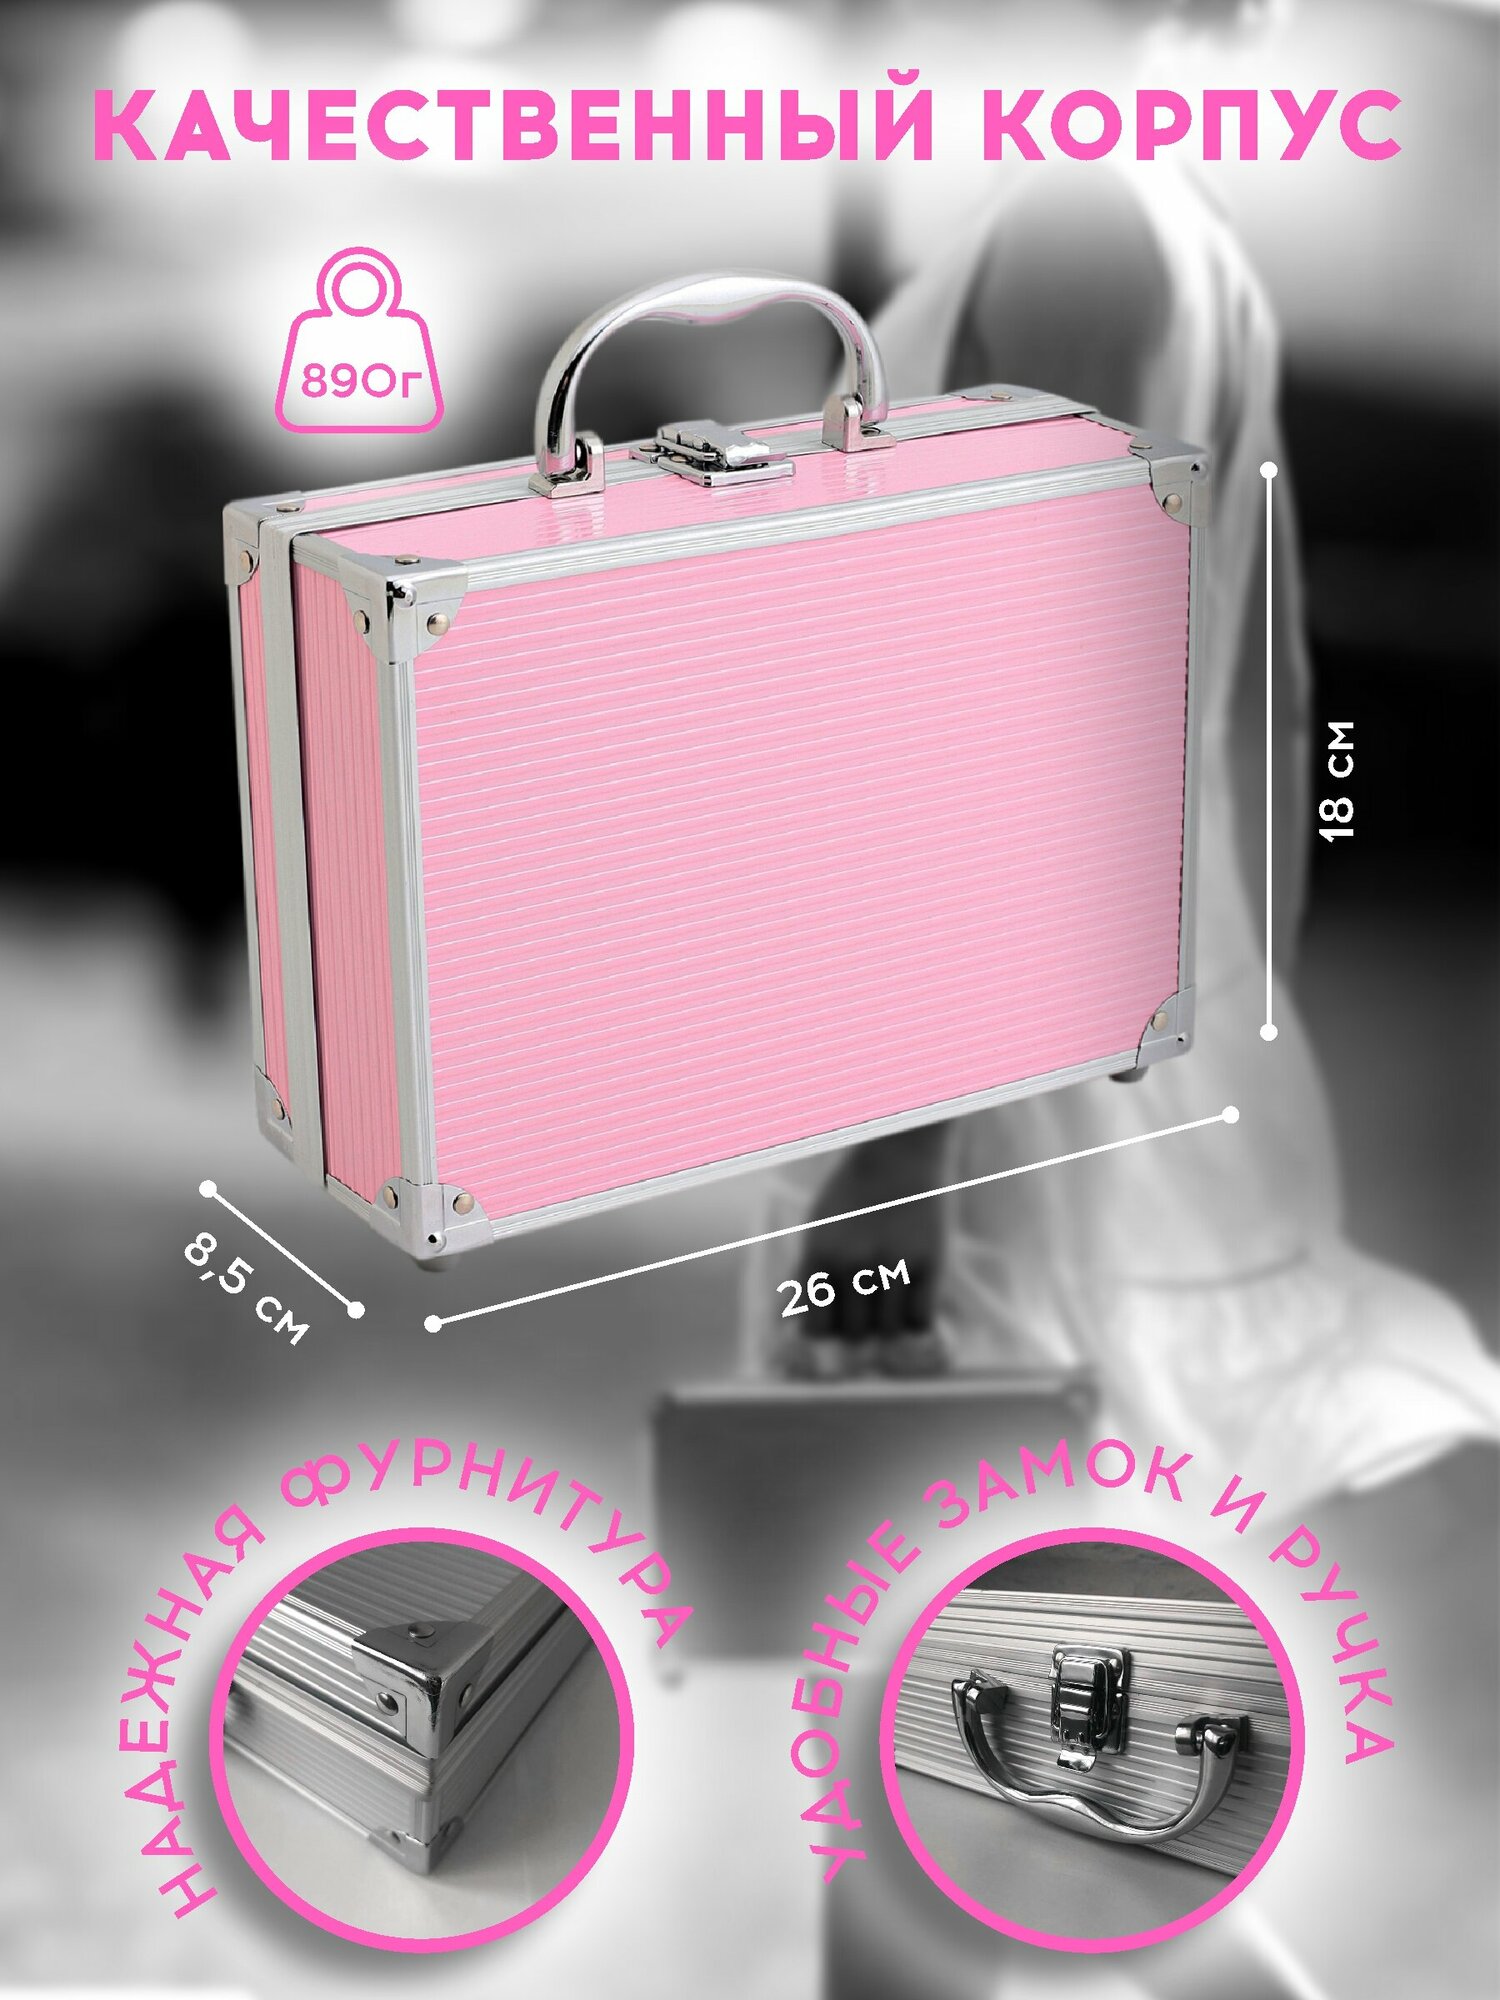 2K Beauty / Бьюти кейс / Бьюти бокс / Подарочный косметический набор №21 (Beauty Pink)